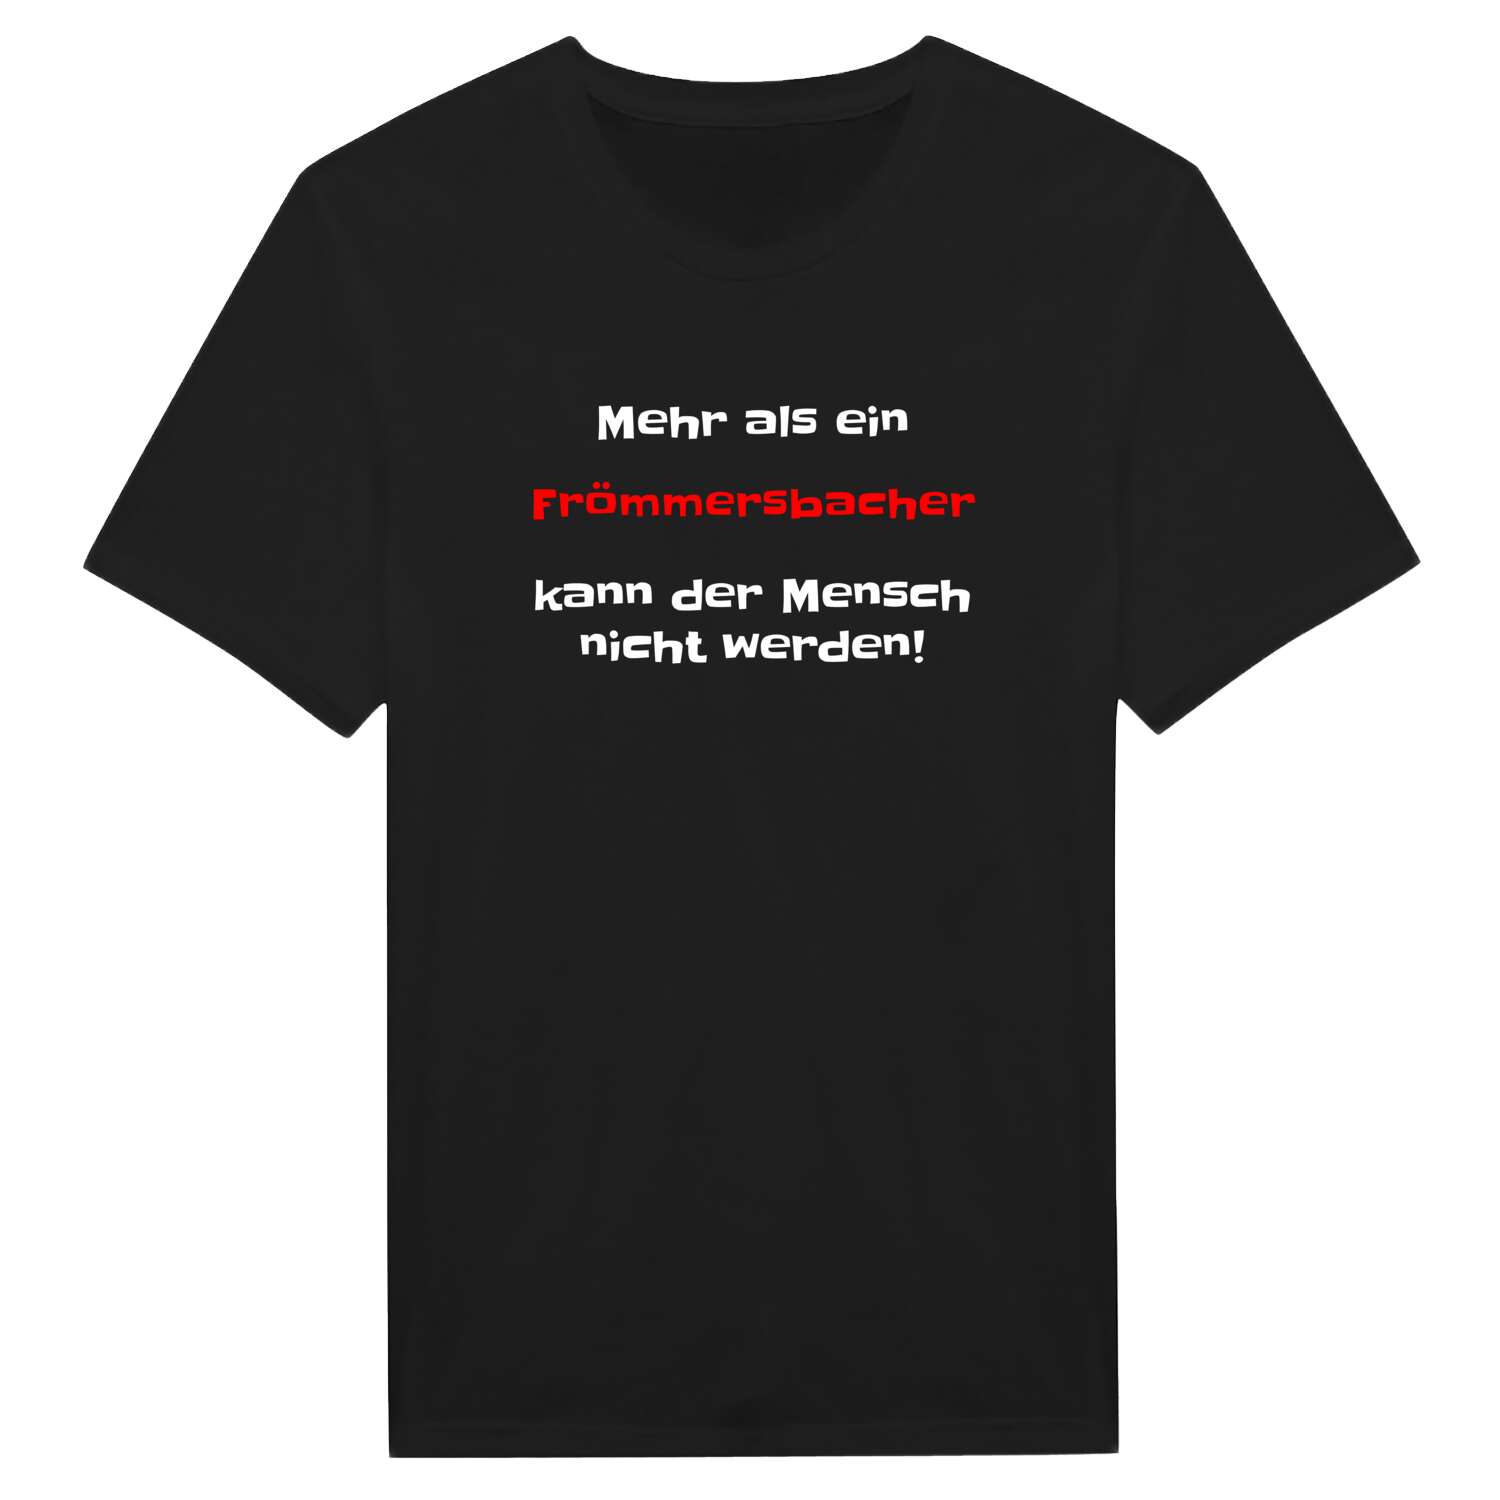 Frömmersbach T-Shirt »Mehr als ein«